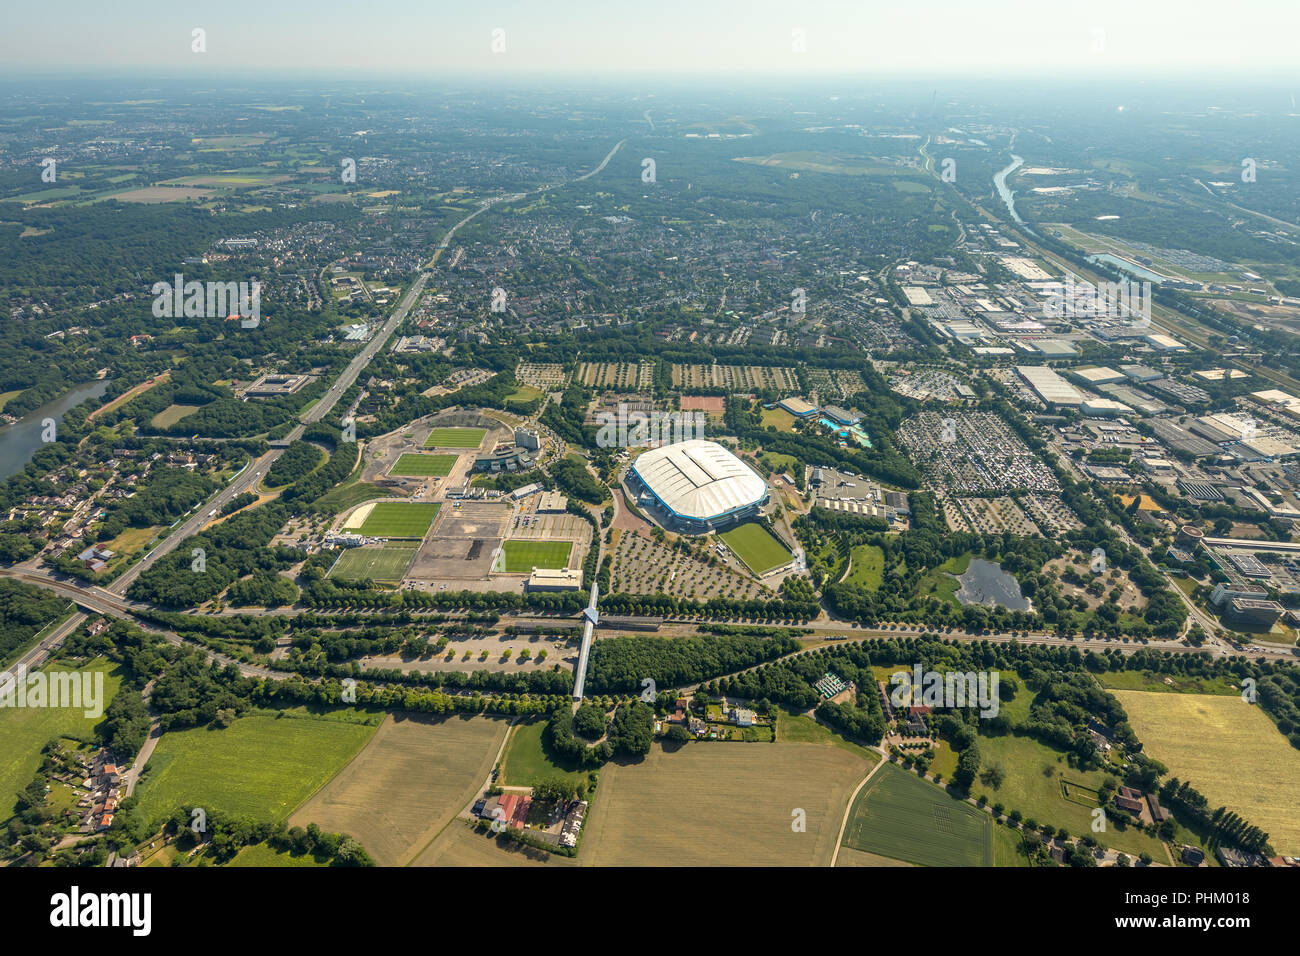 Vista aérea del parque ARENA, Gelsenkirchen, Veltins-Arena, Arena AufSchalke en Gelsenkirchen es el estadio de fútbol del club de fútbol alemán FC Schalke 04, Foto de stock